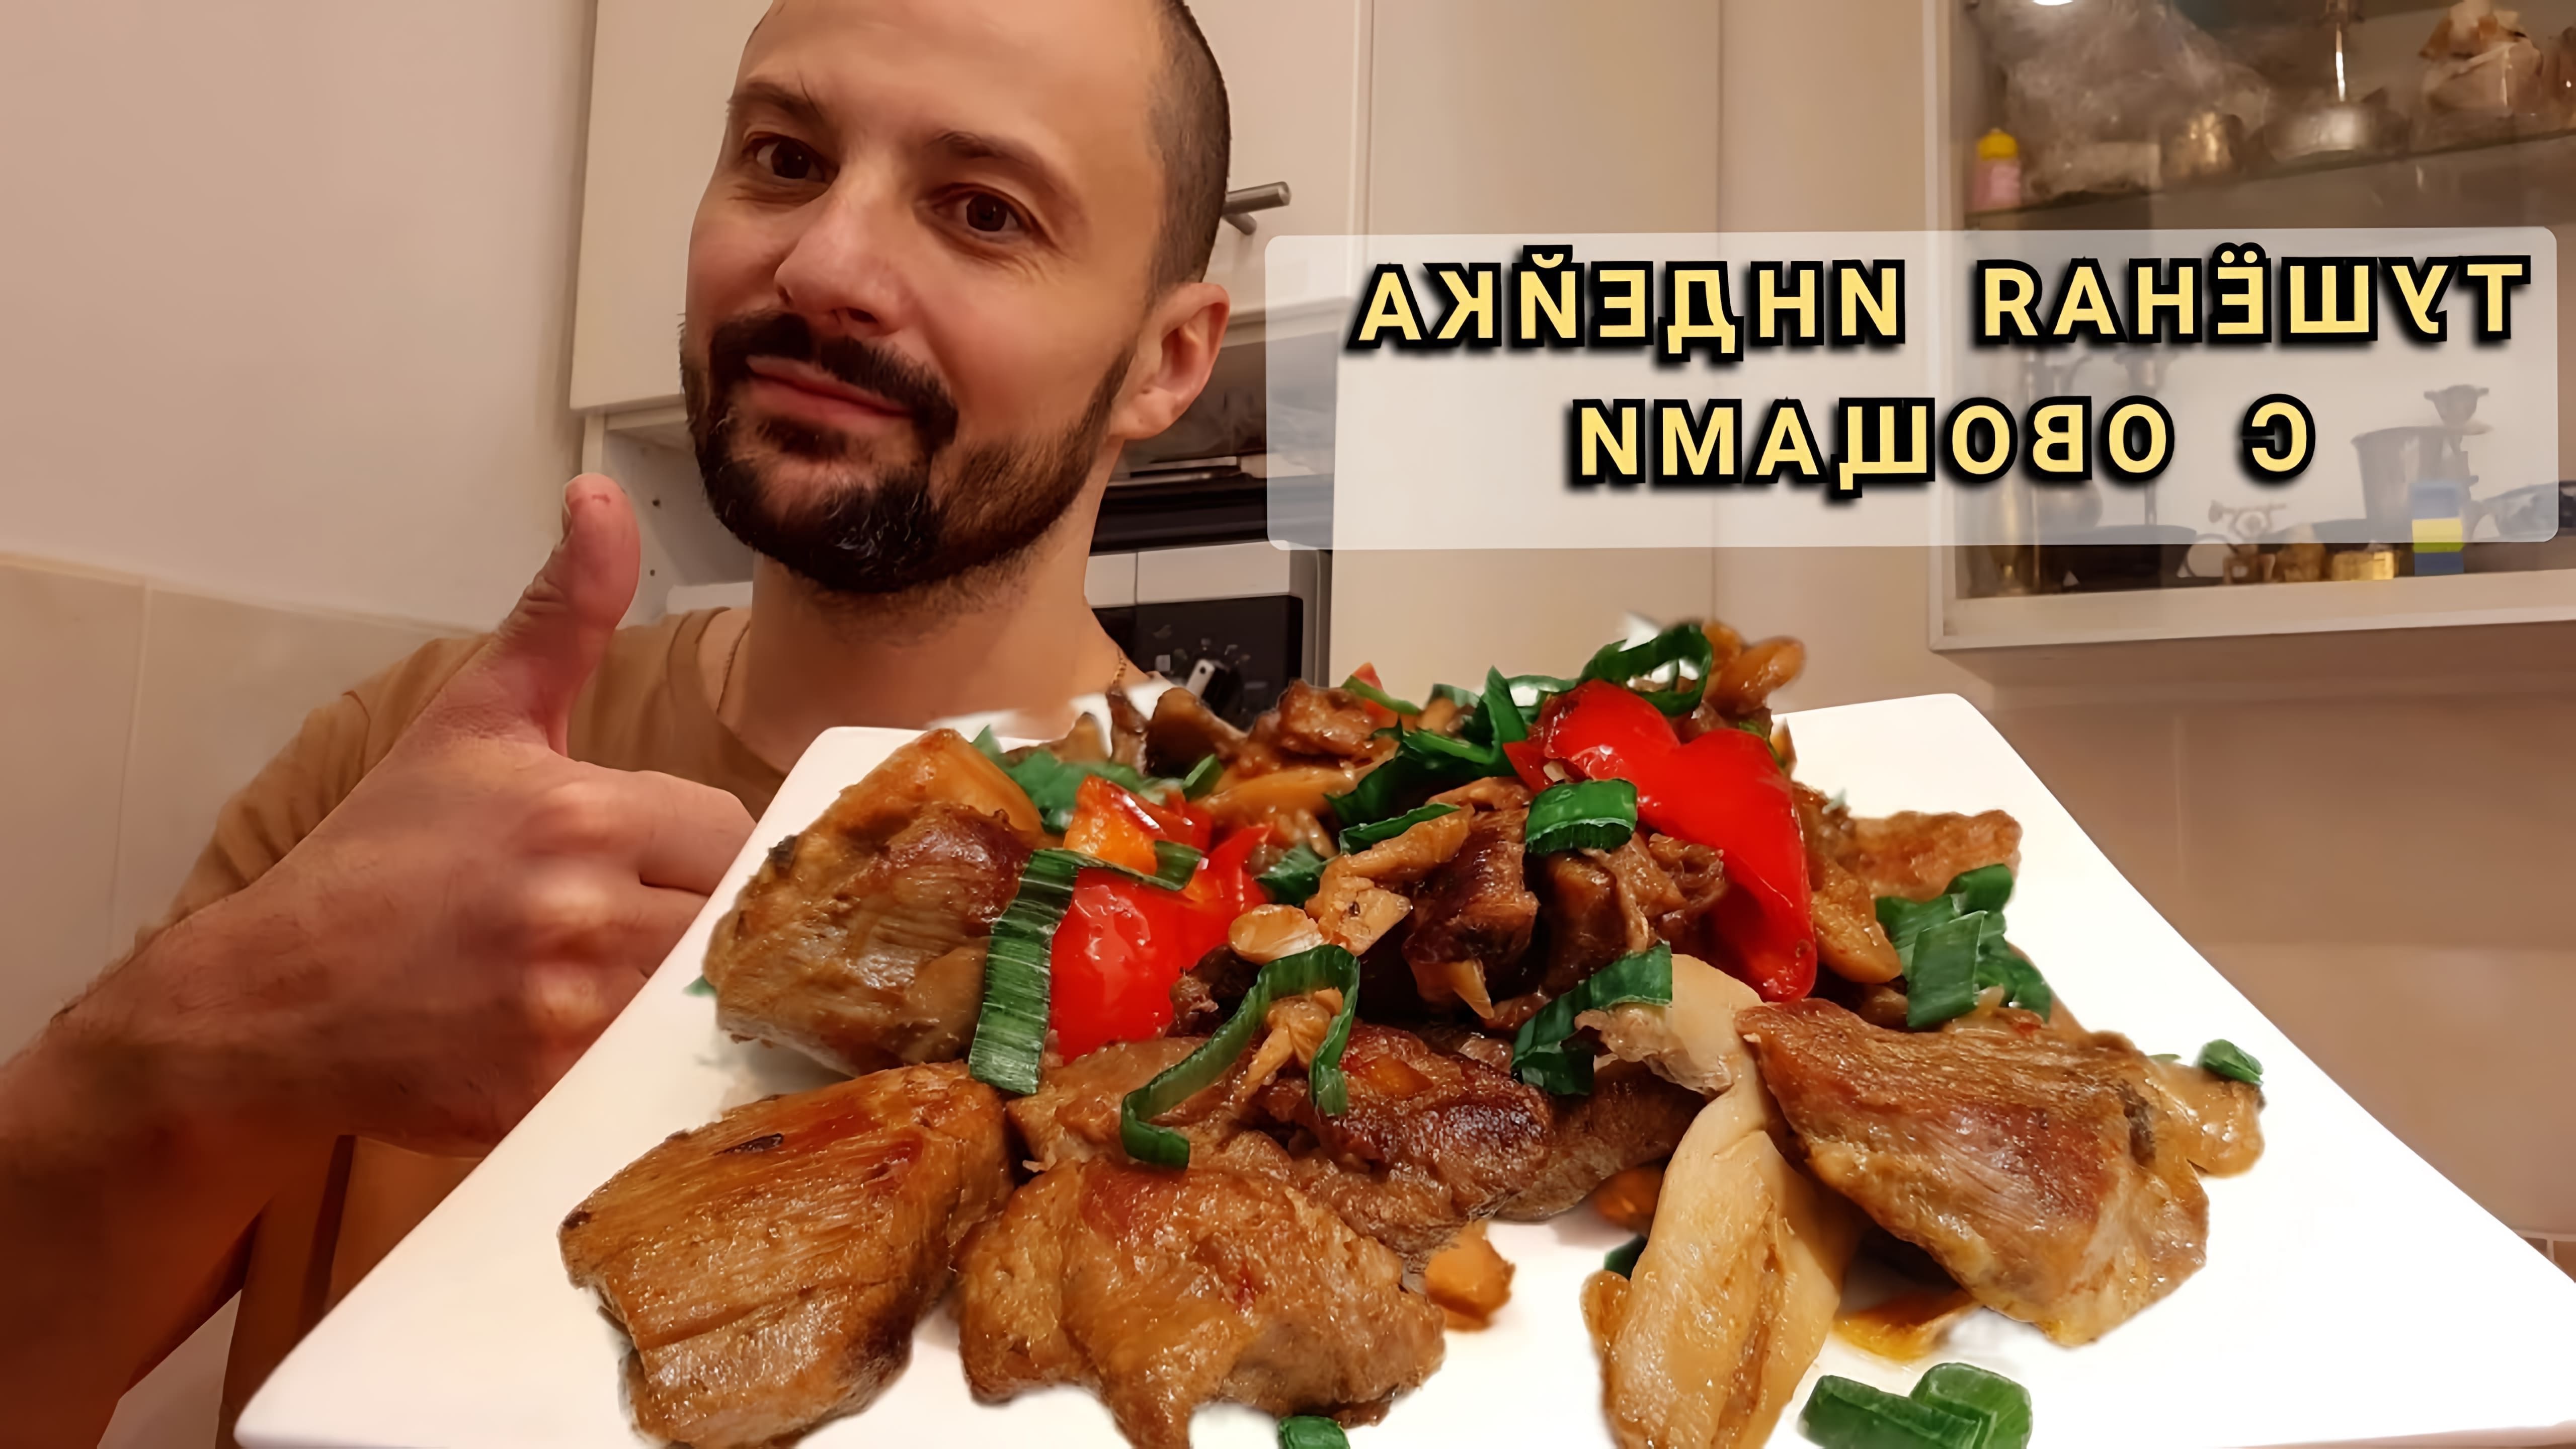 В этом видео Дмитрий показывает, как приготовить вкусное блюдо - тушеное бедро индейки с овощами